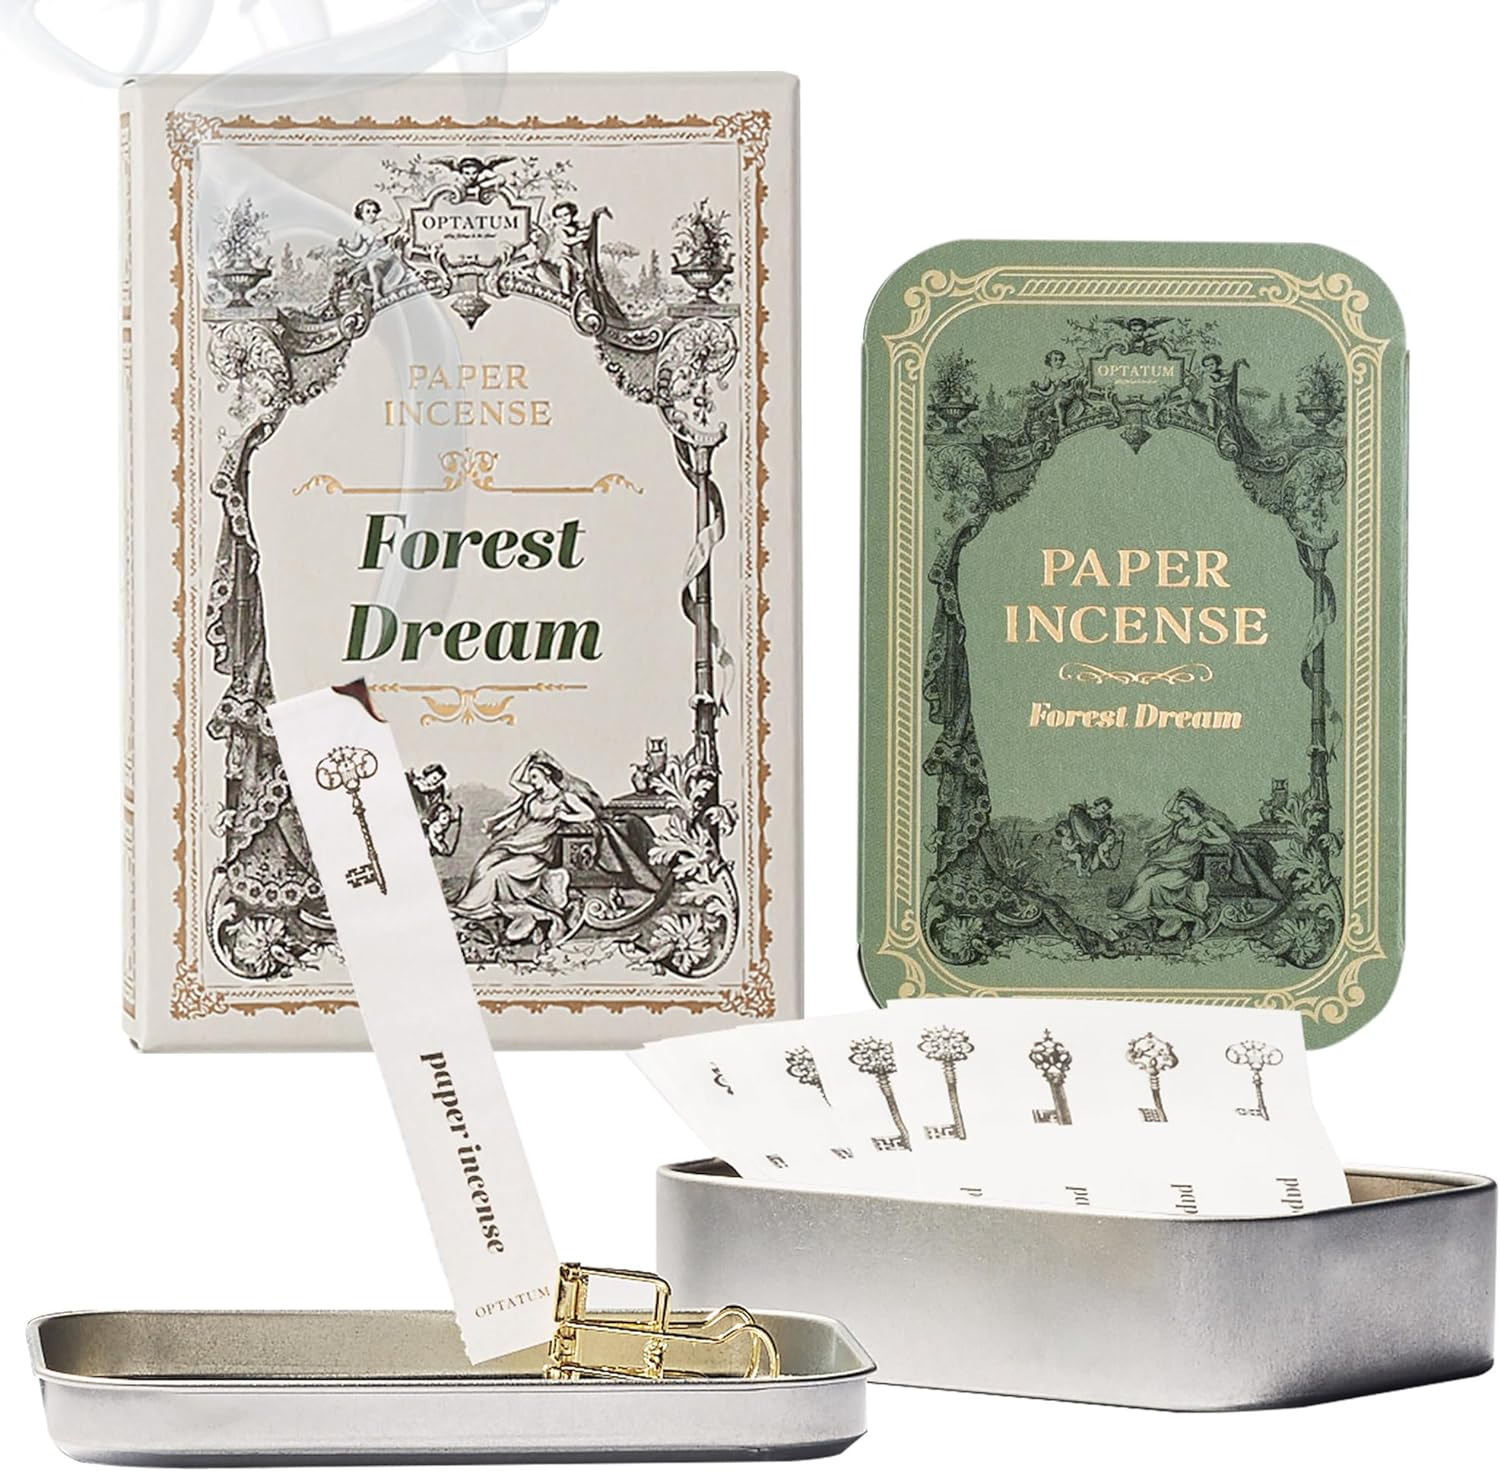 Paper Incense with Vintage Metal Case Holder Set - 48 Sheets, Smell Good Incense